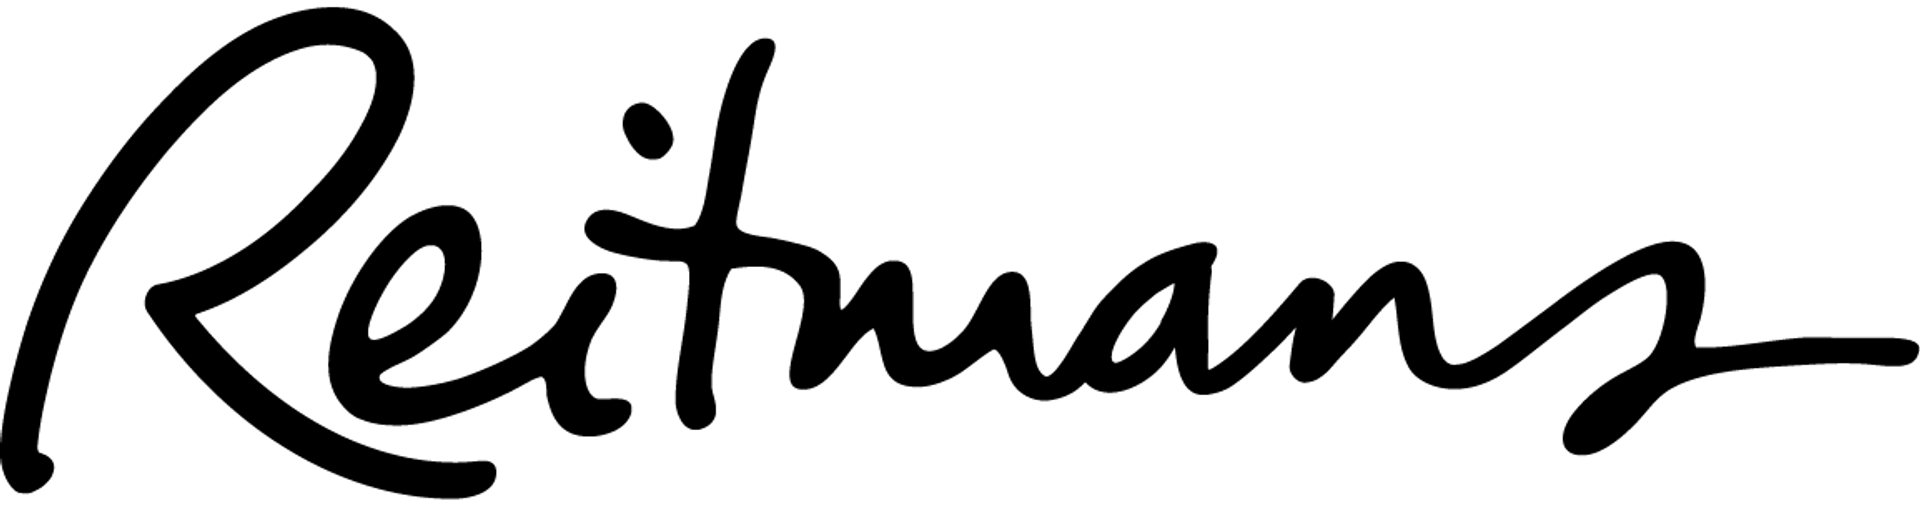 REITMANS logo de circulaires